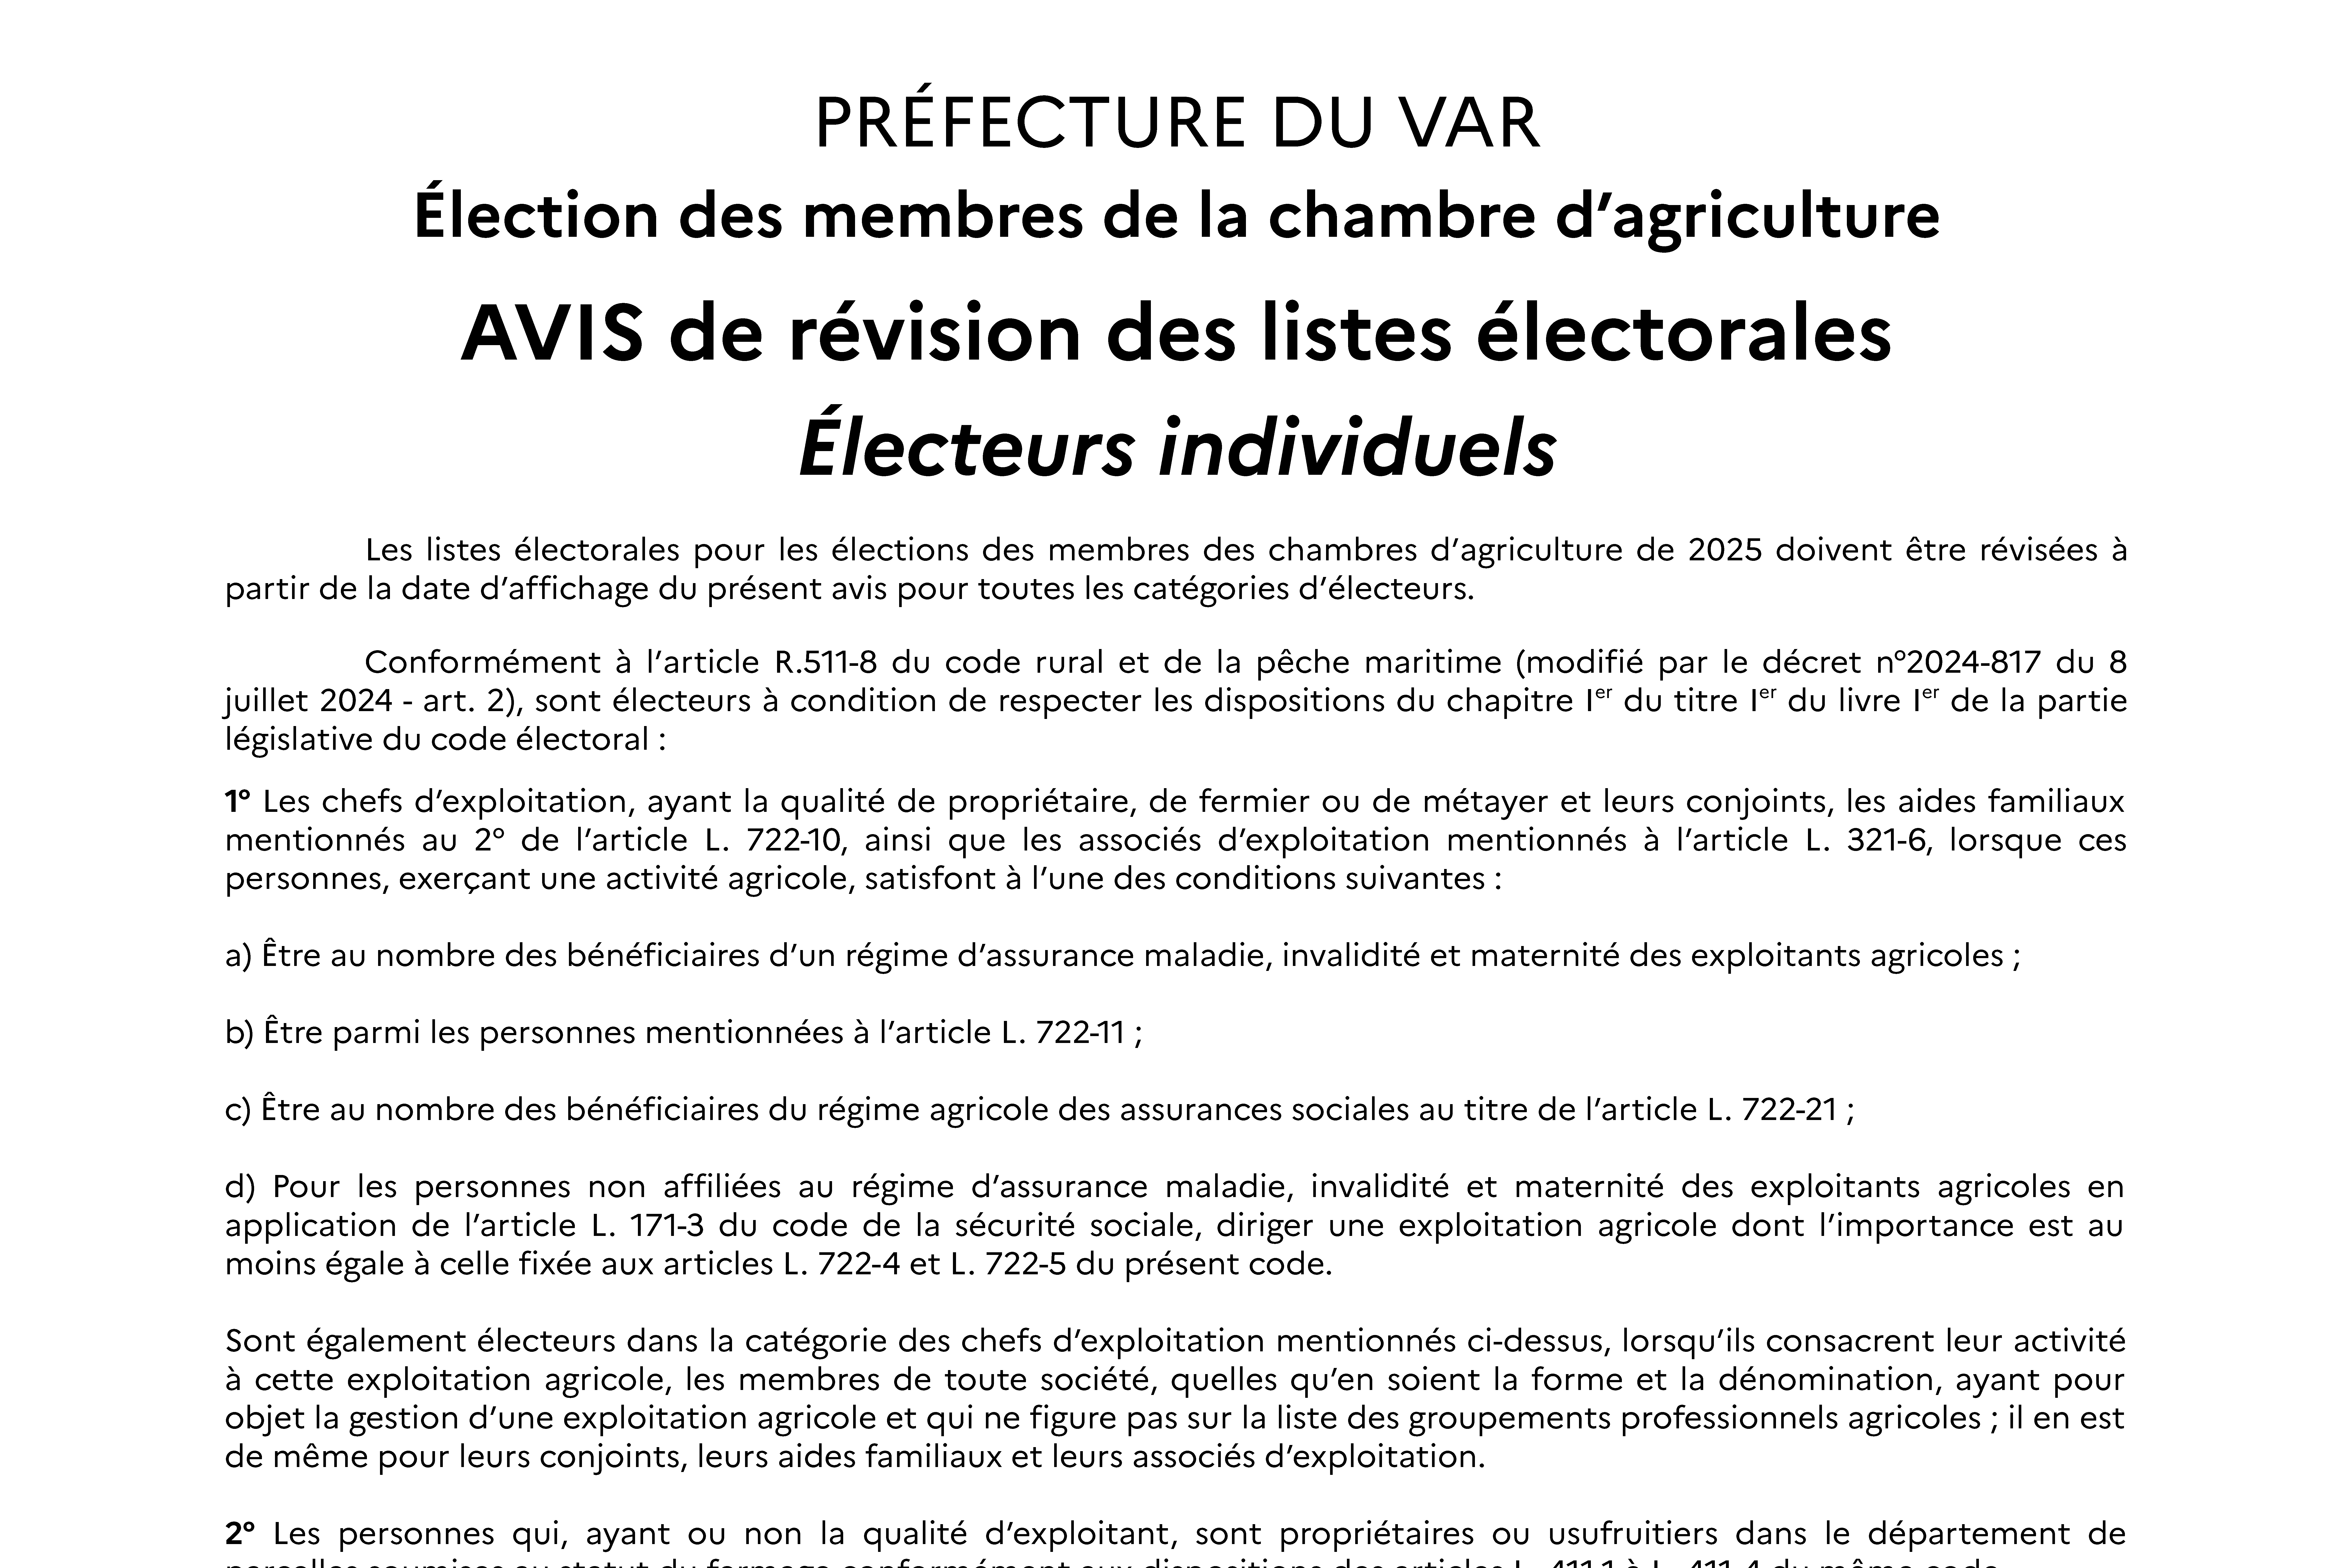 AVIS de révision des listes électorales – Électeurs individuels